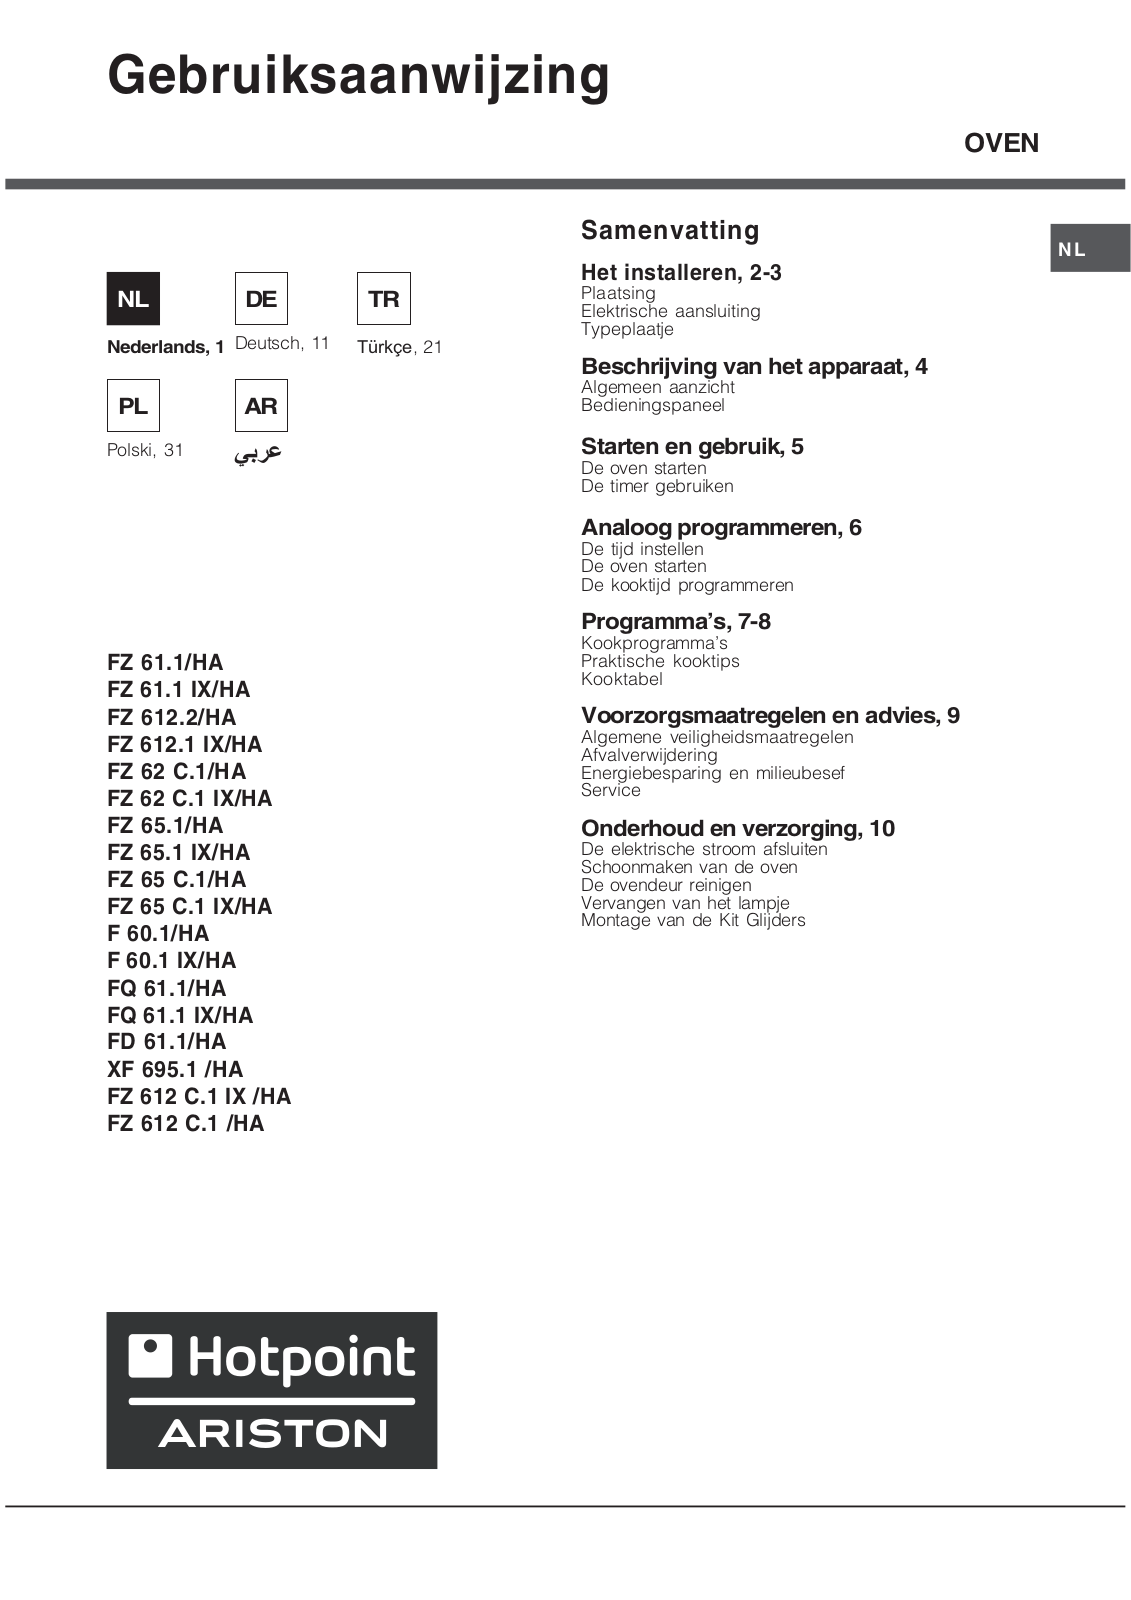 Hotpoint Ariston FZ 65.1, FZ 65.1 IX/HA, FQ 61.1, FZ 612 C.1 IX/HA, FZ 62 C.1 IX/HA Manual